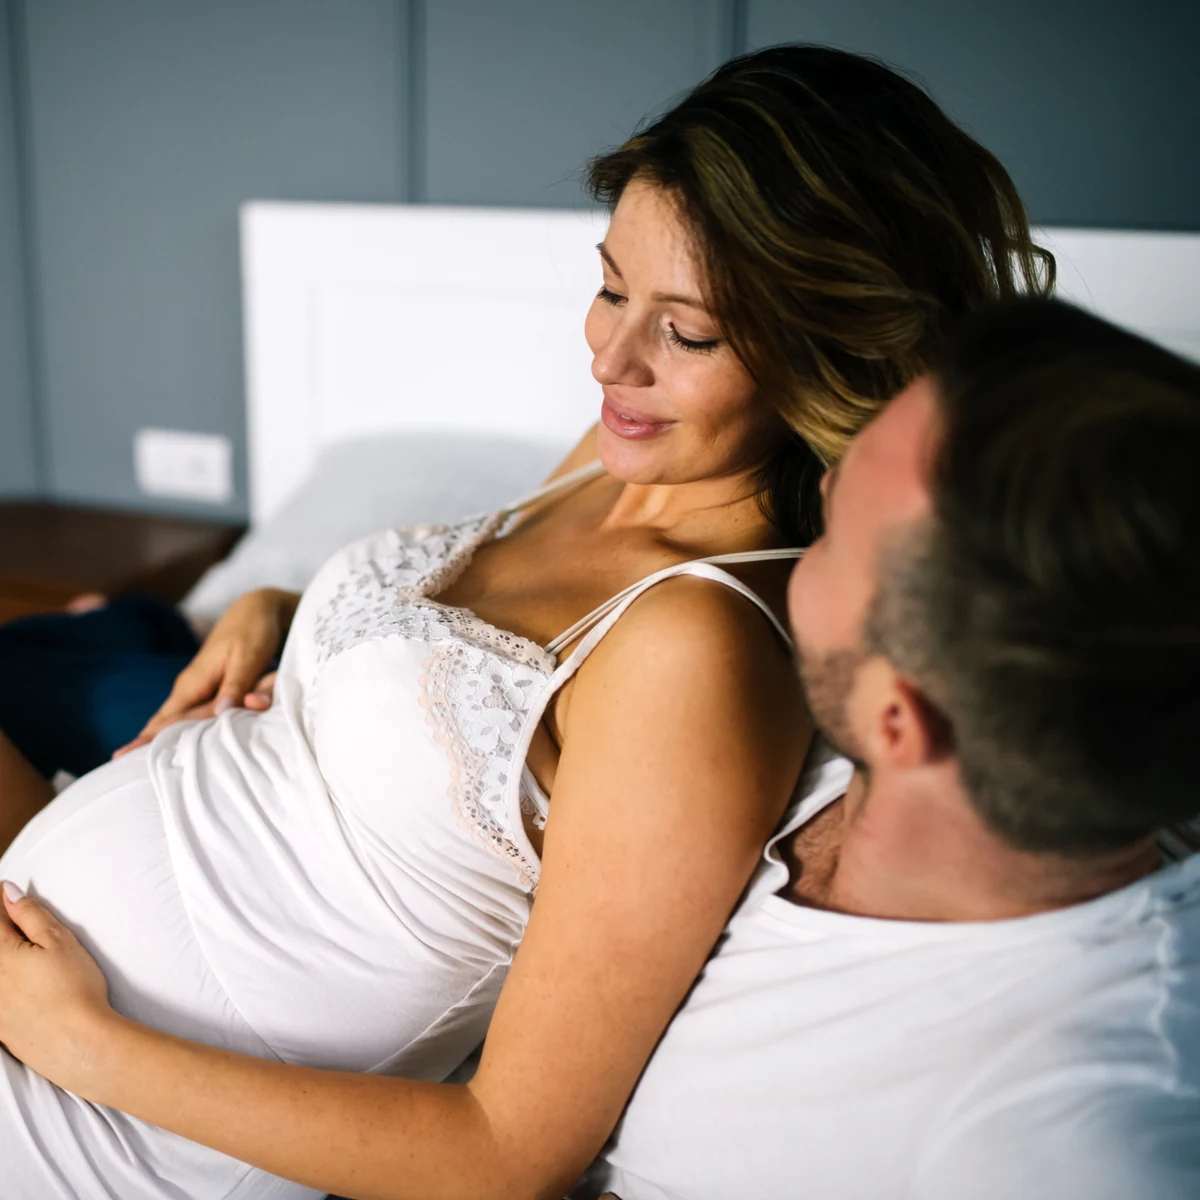 El deseo sexual aumenta en muchas mujeres durante el embarazo» imagen